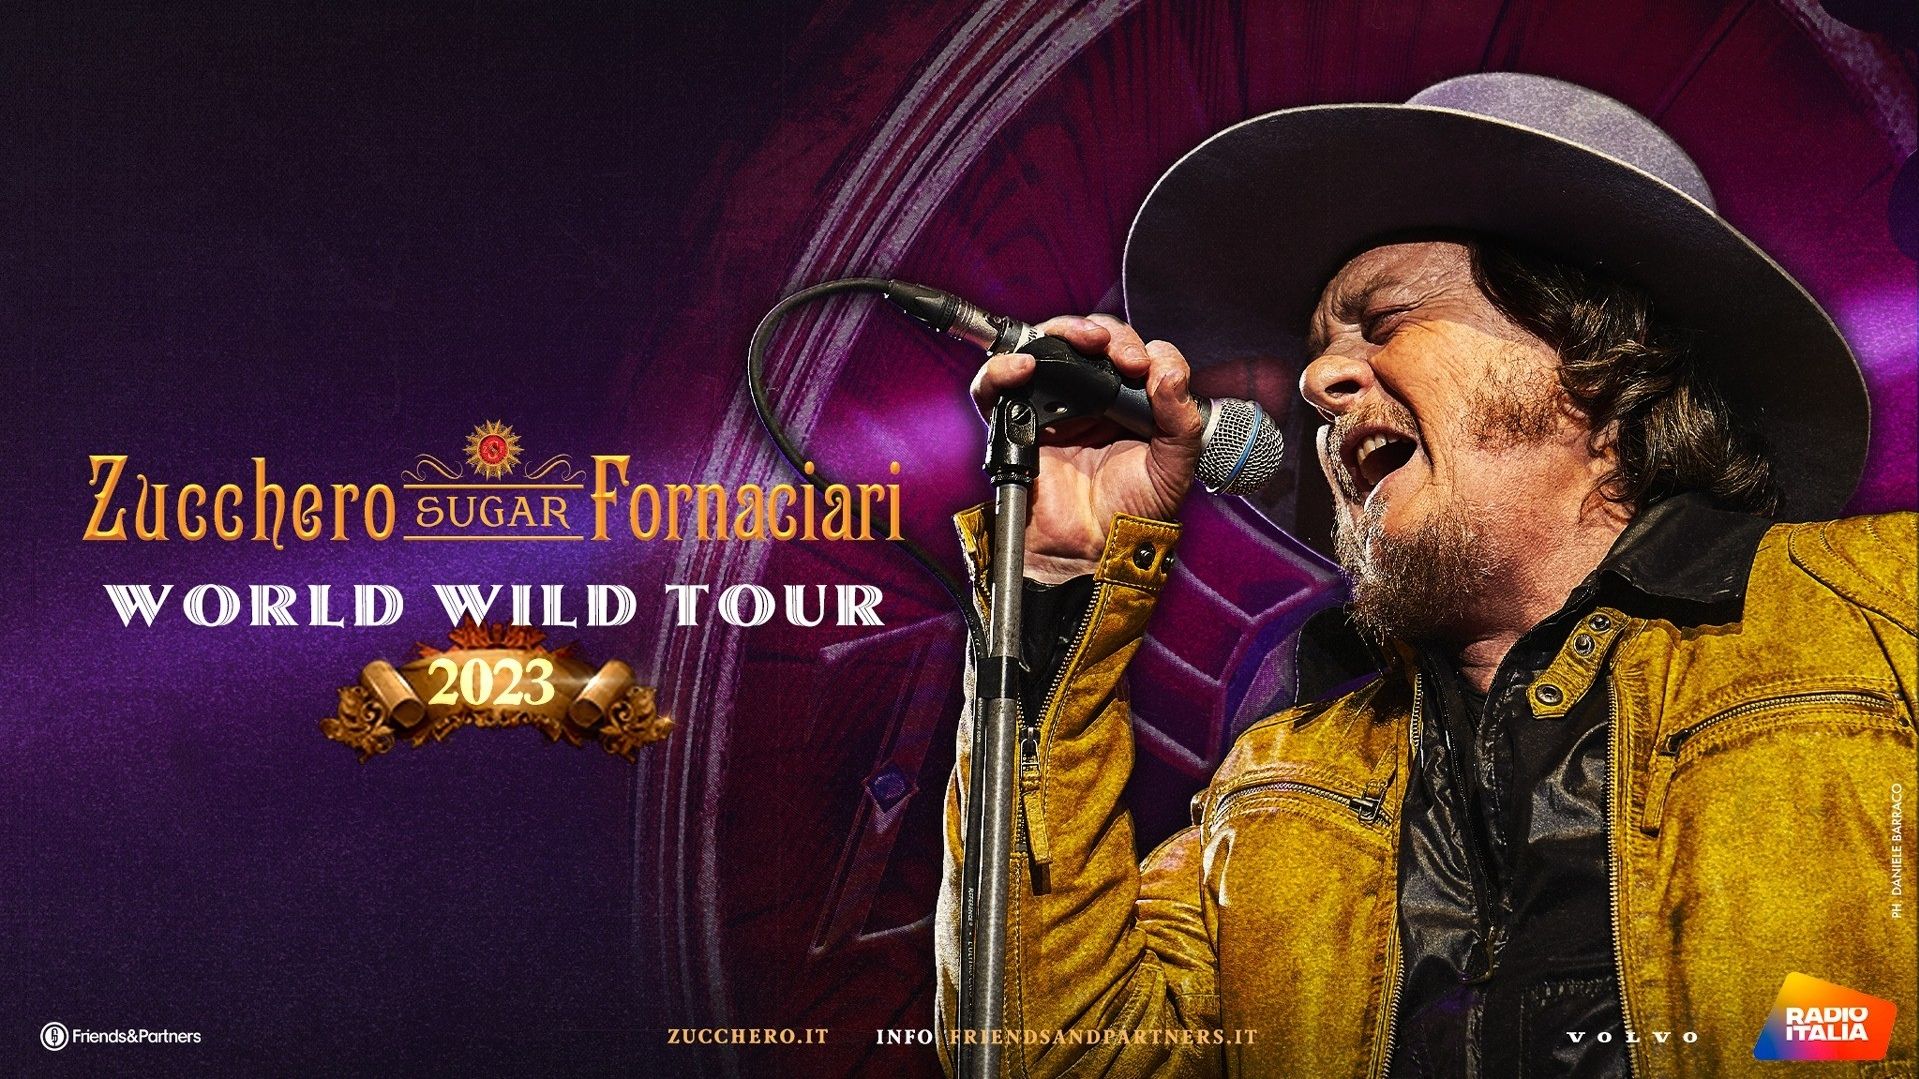 Zucchero - "World Wild Tour 2023"